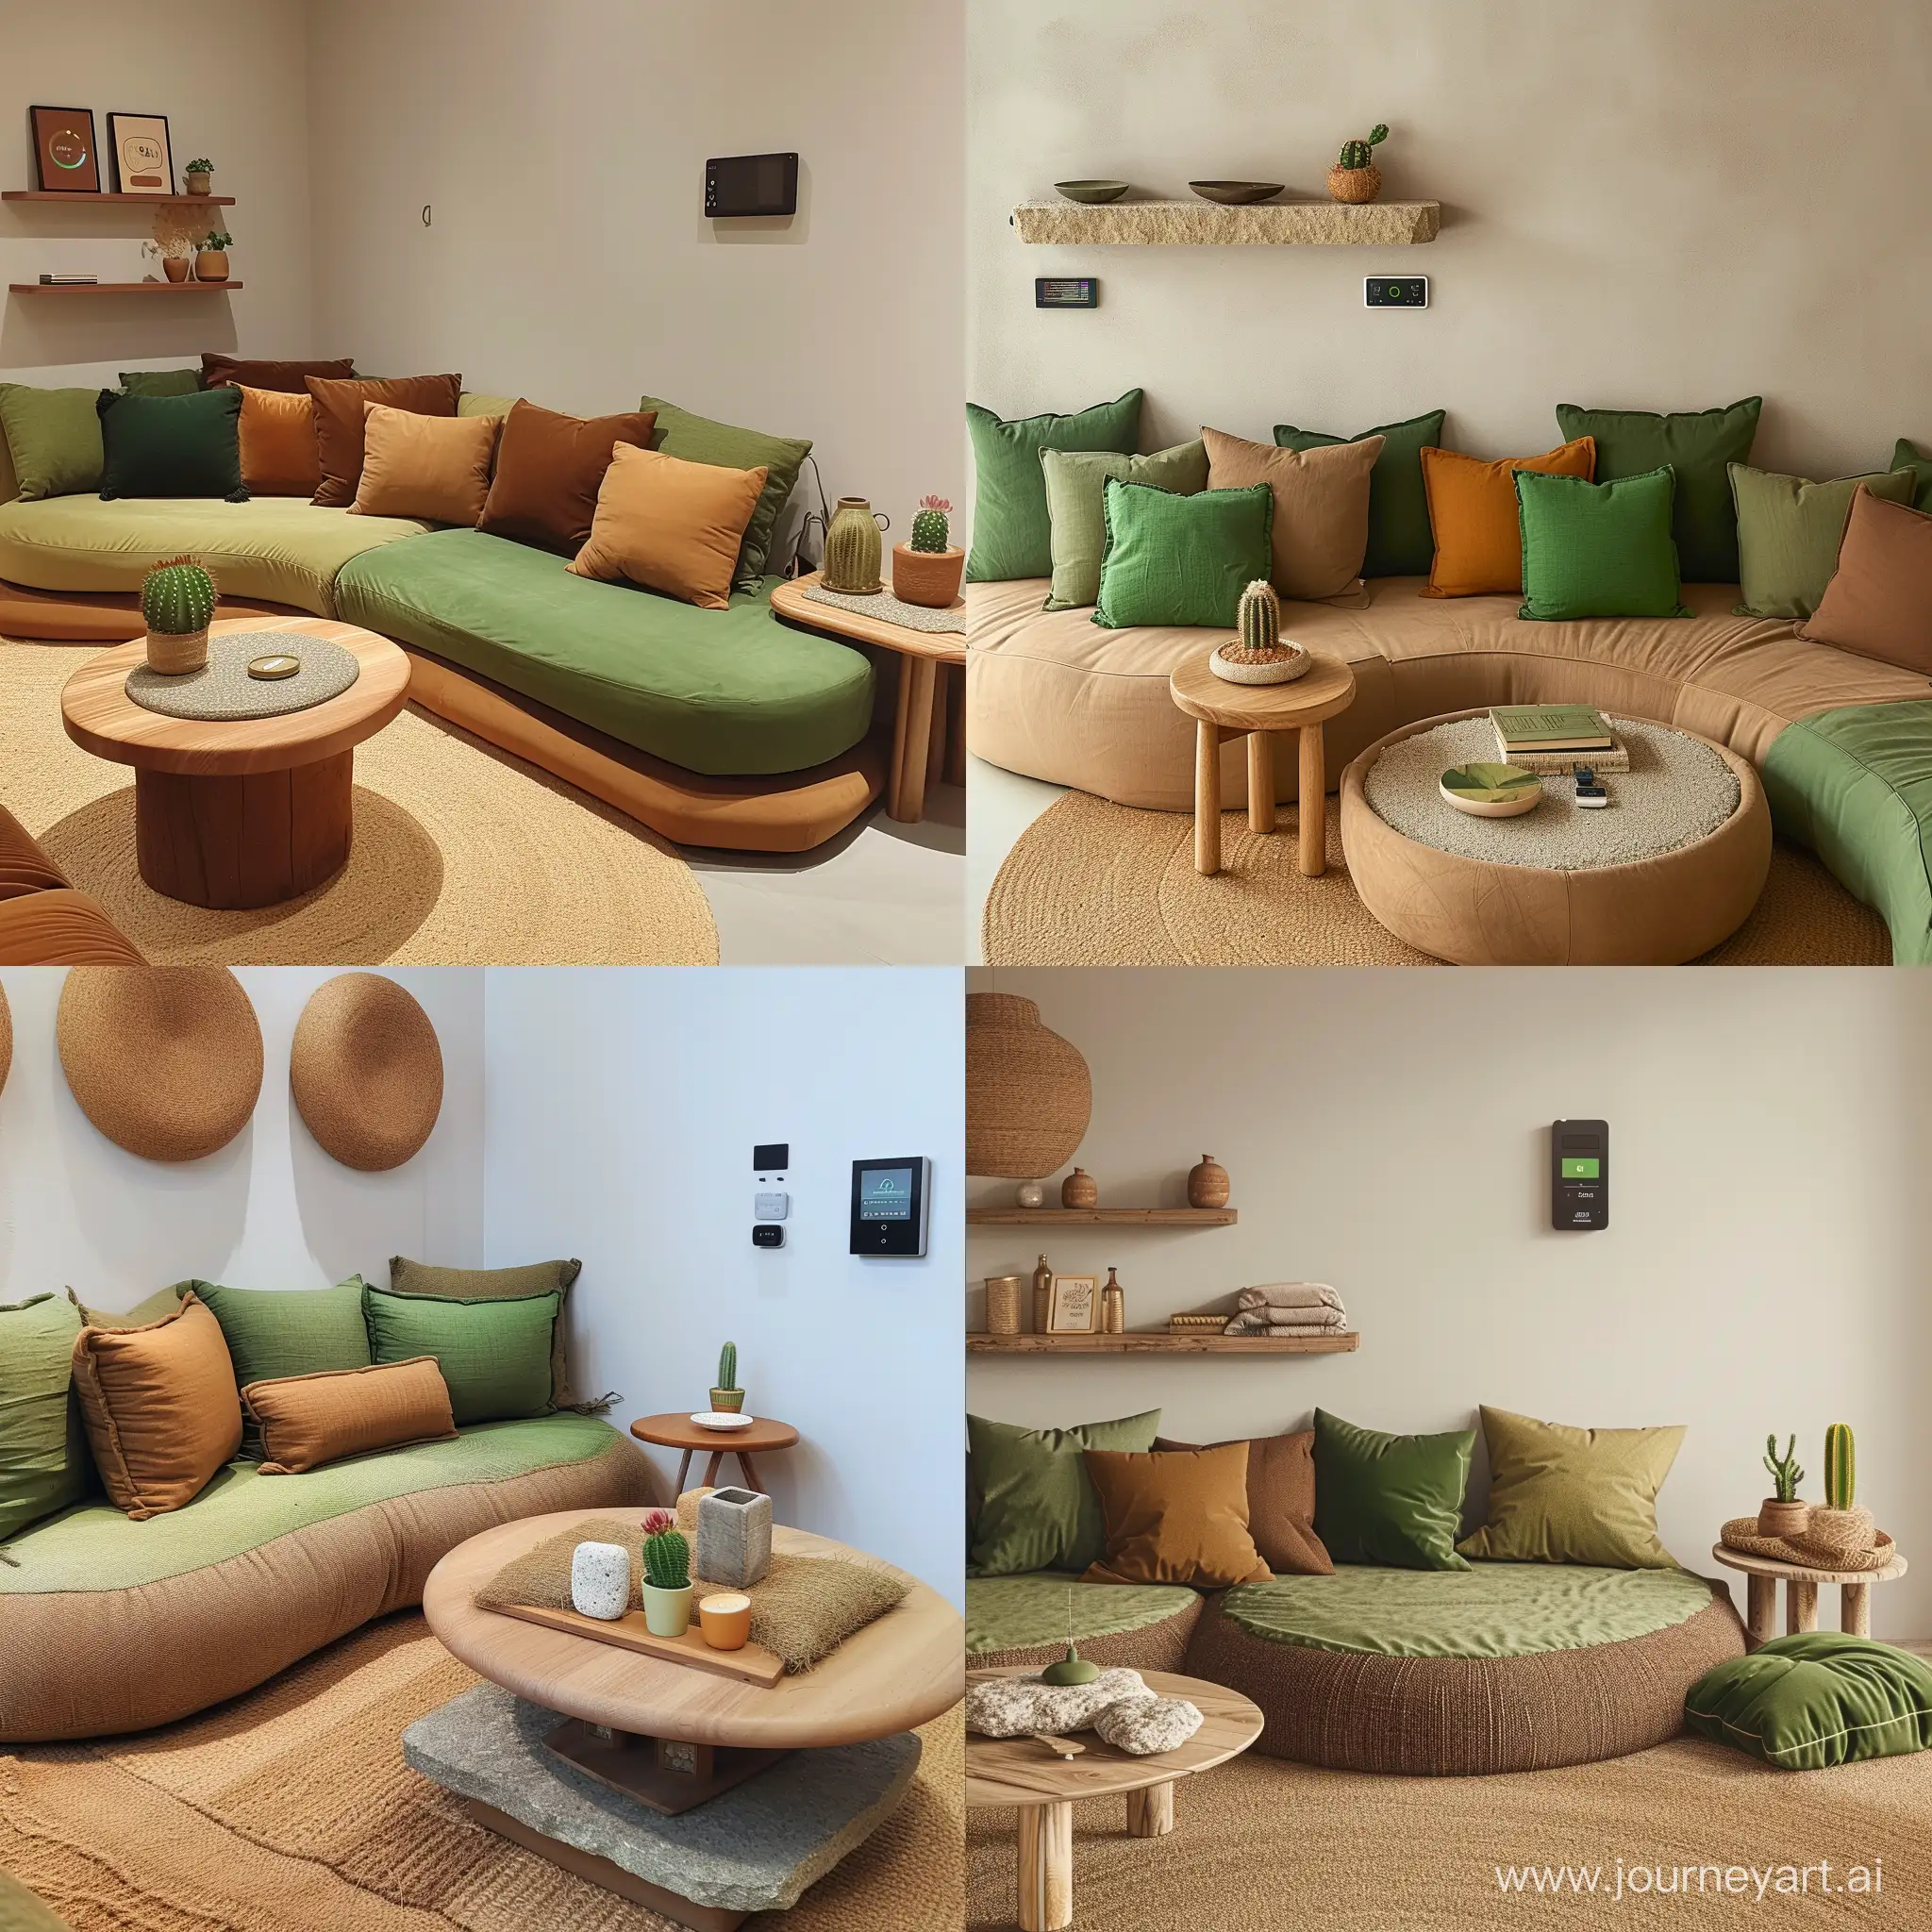 Contemporary-Living-Room-Interior-with-Smart-Home-Control